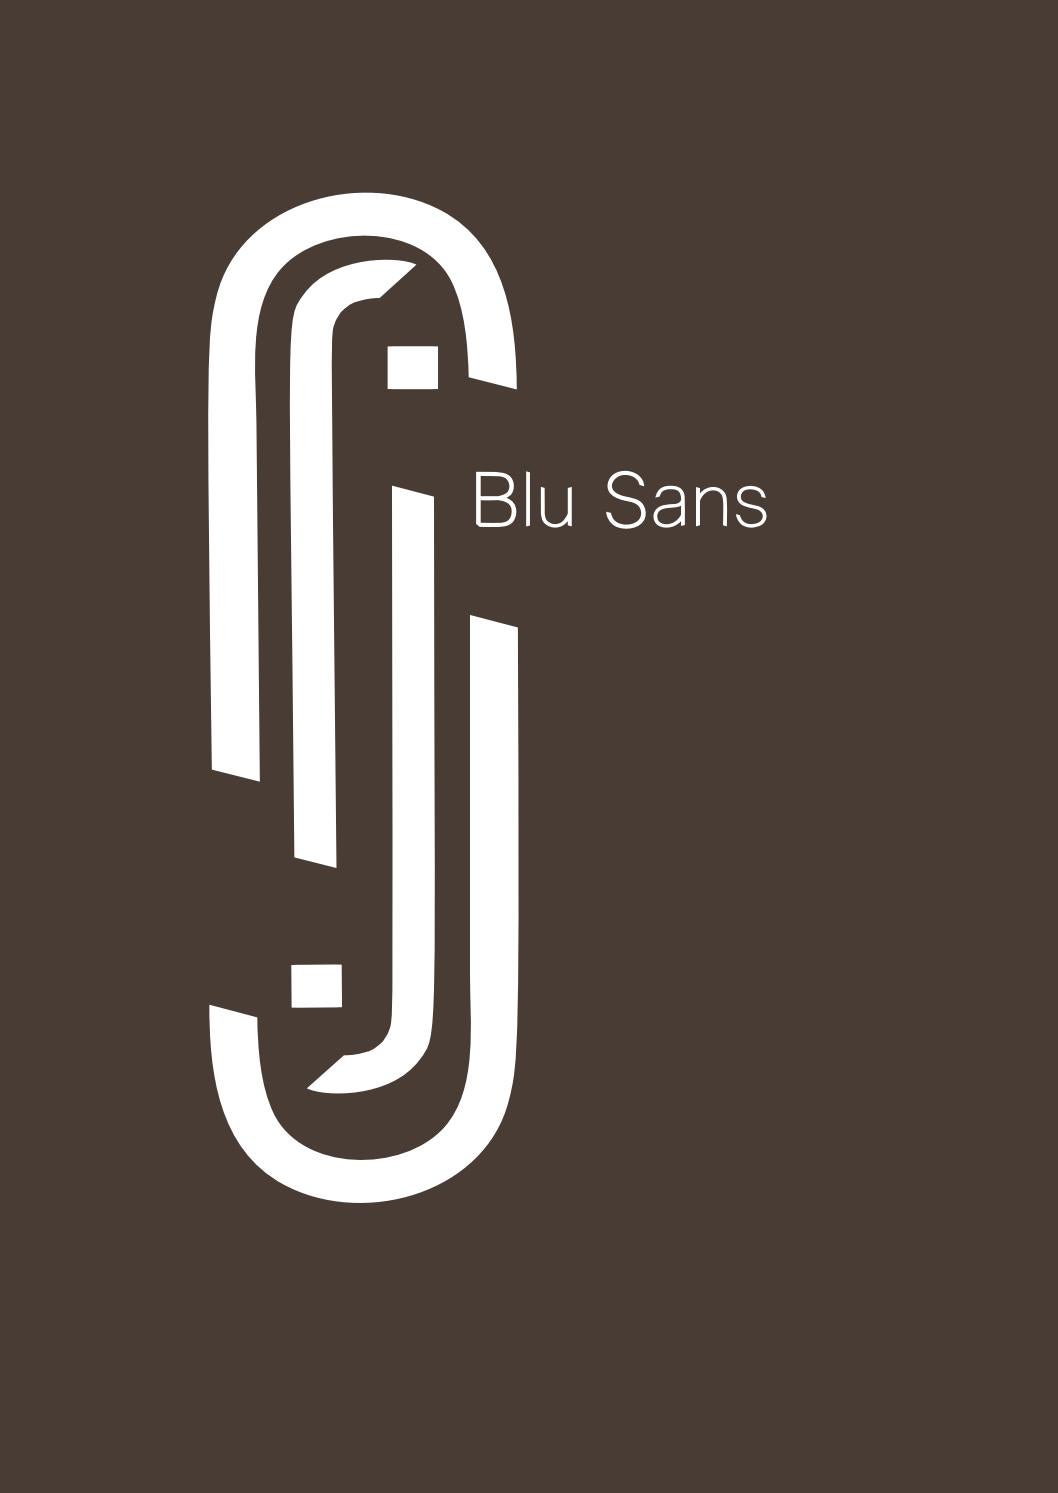 Blu Sans